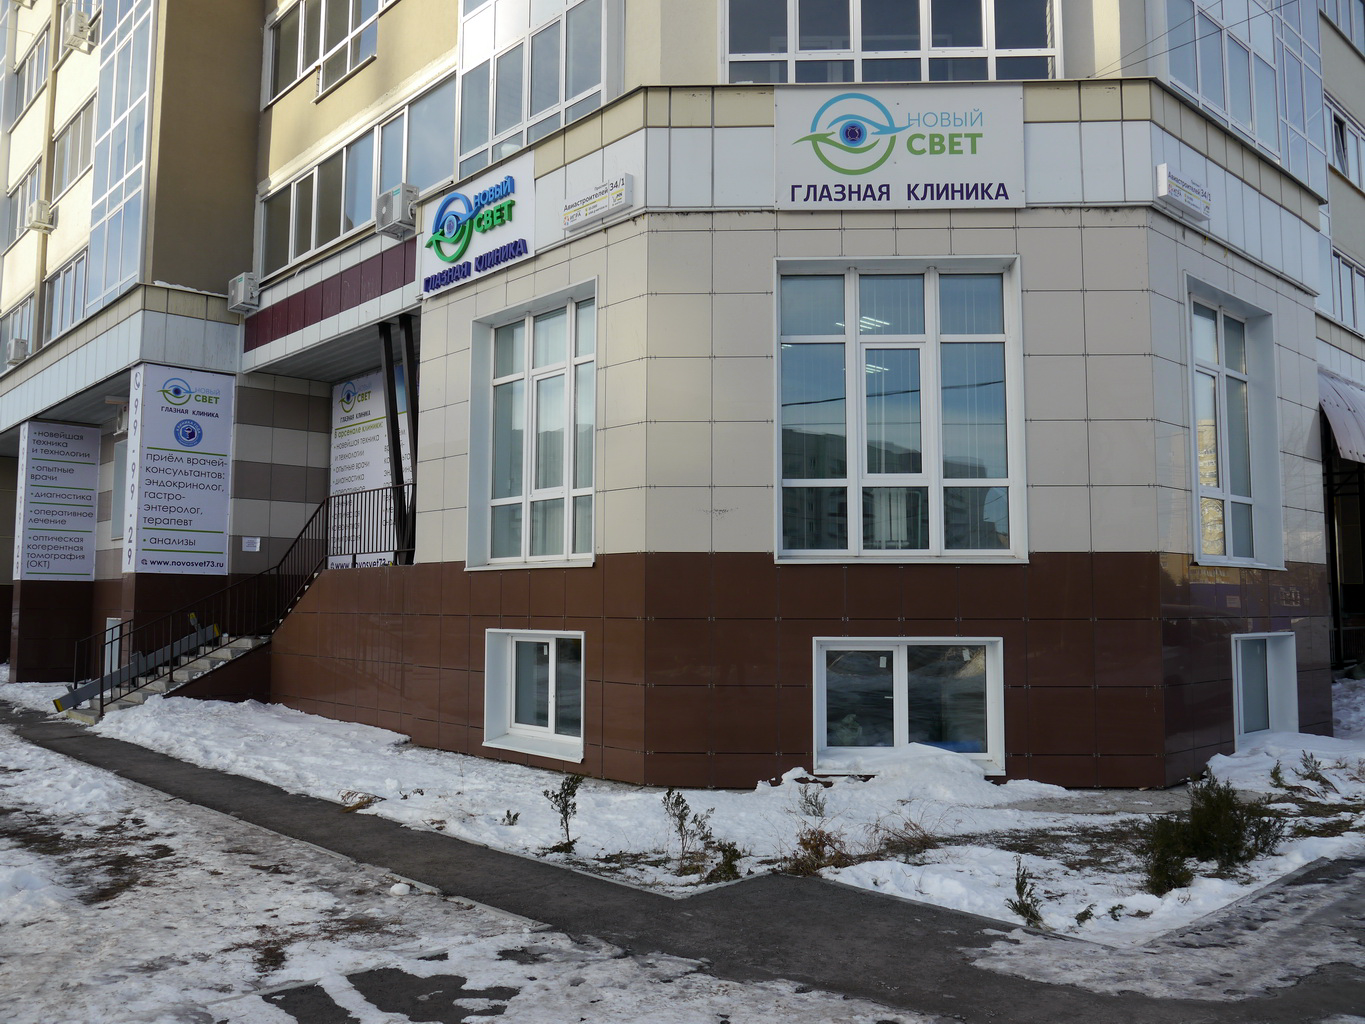 Новый свет клиника ульяновск новый город